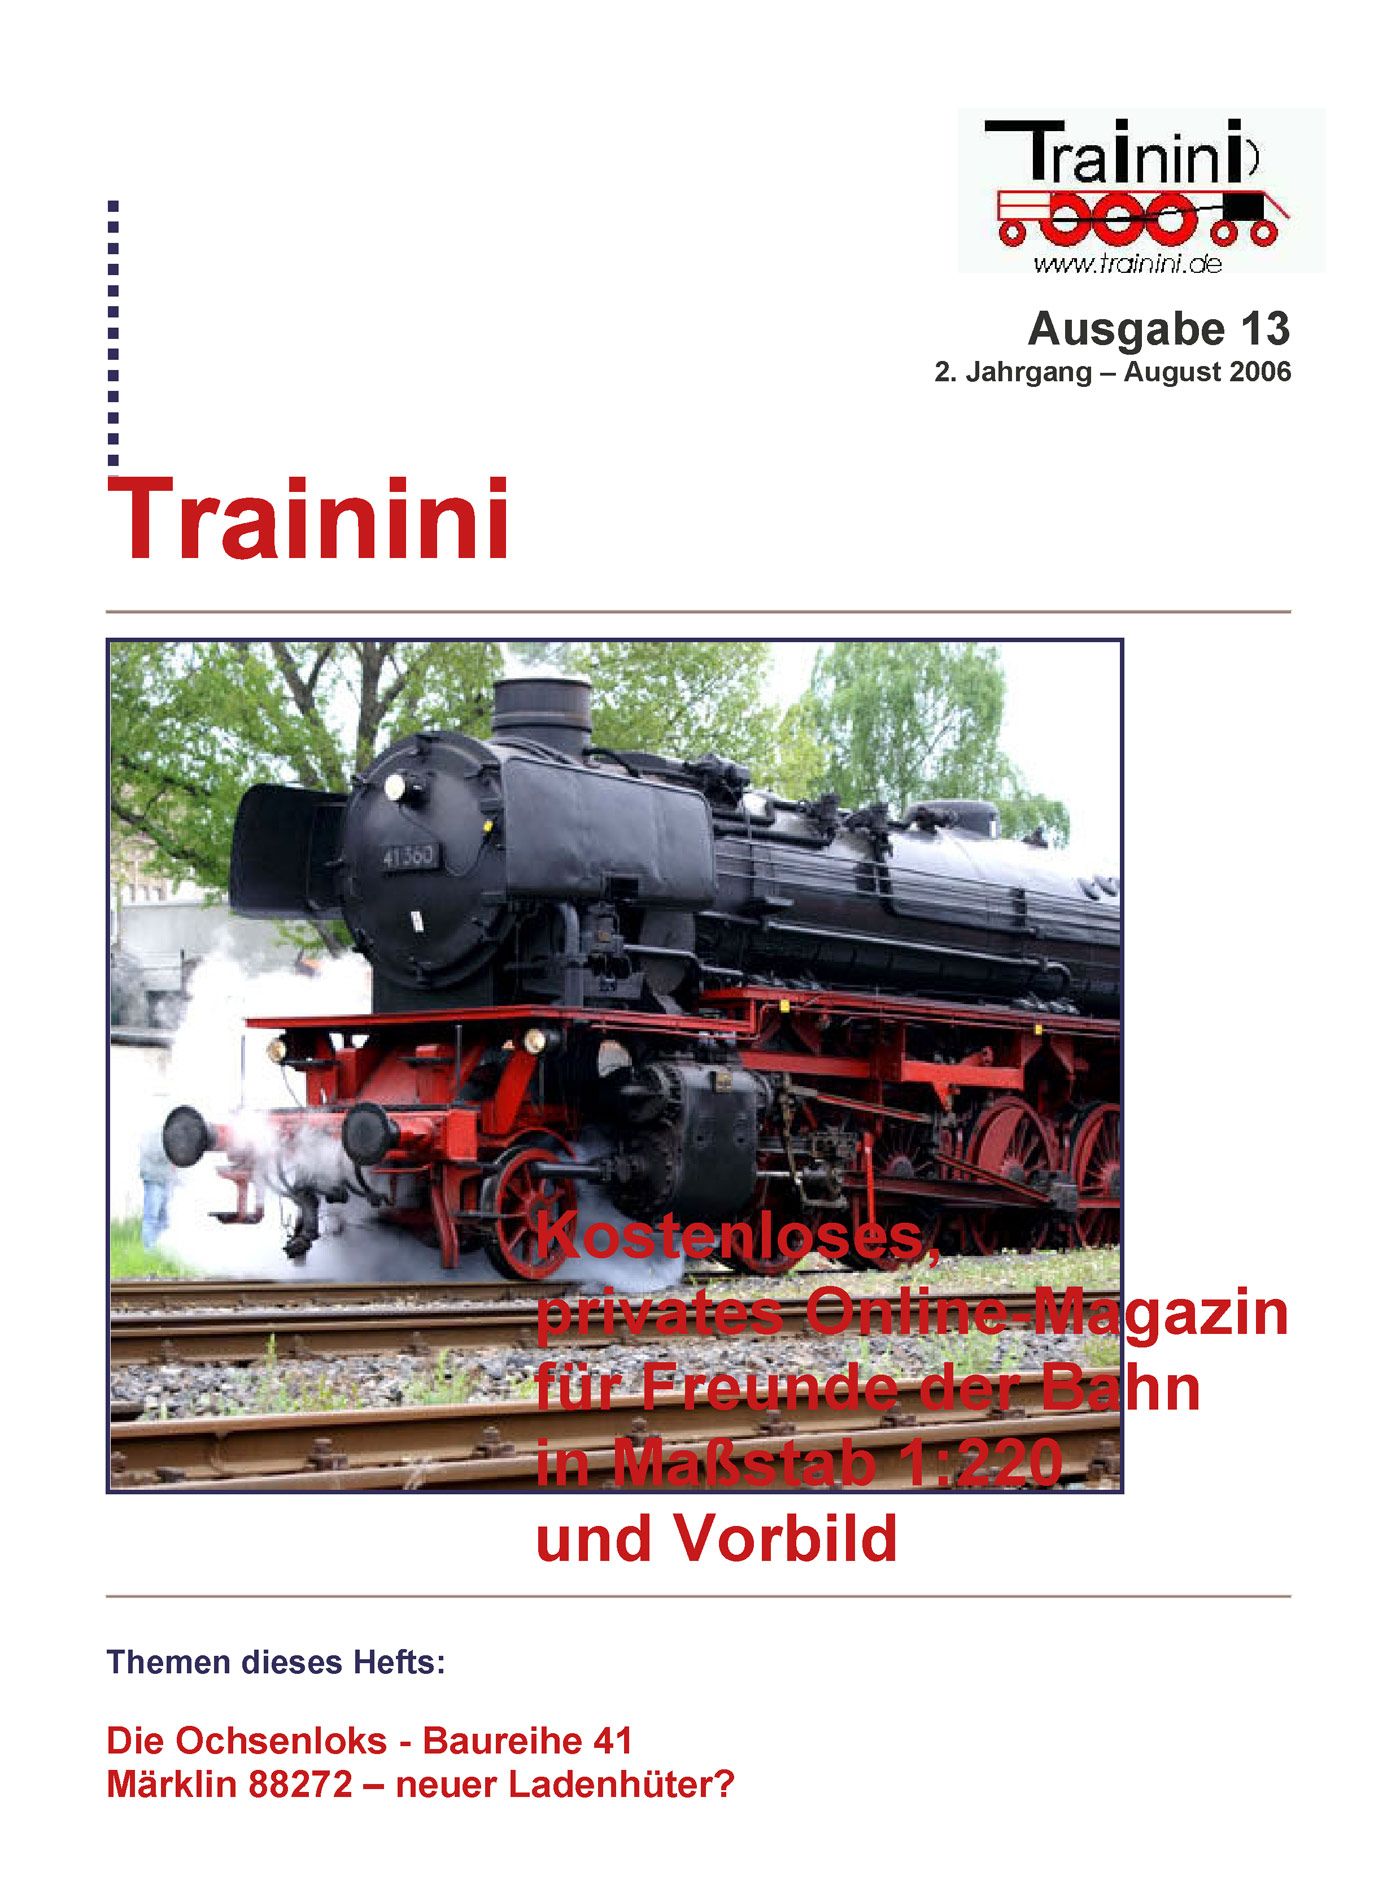 Trainini Ausgabe August 2006